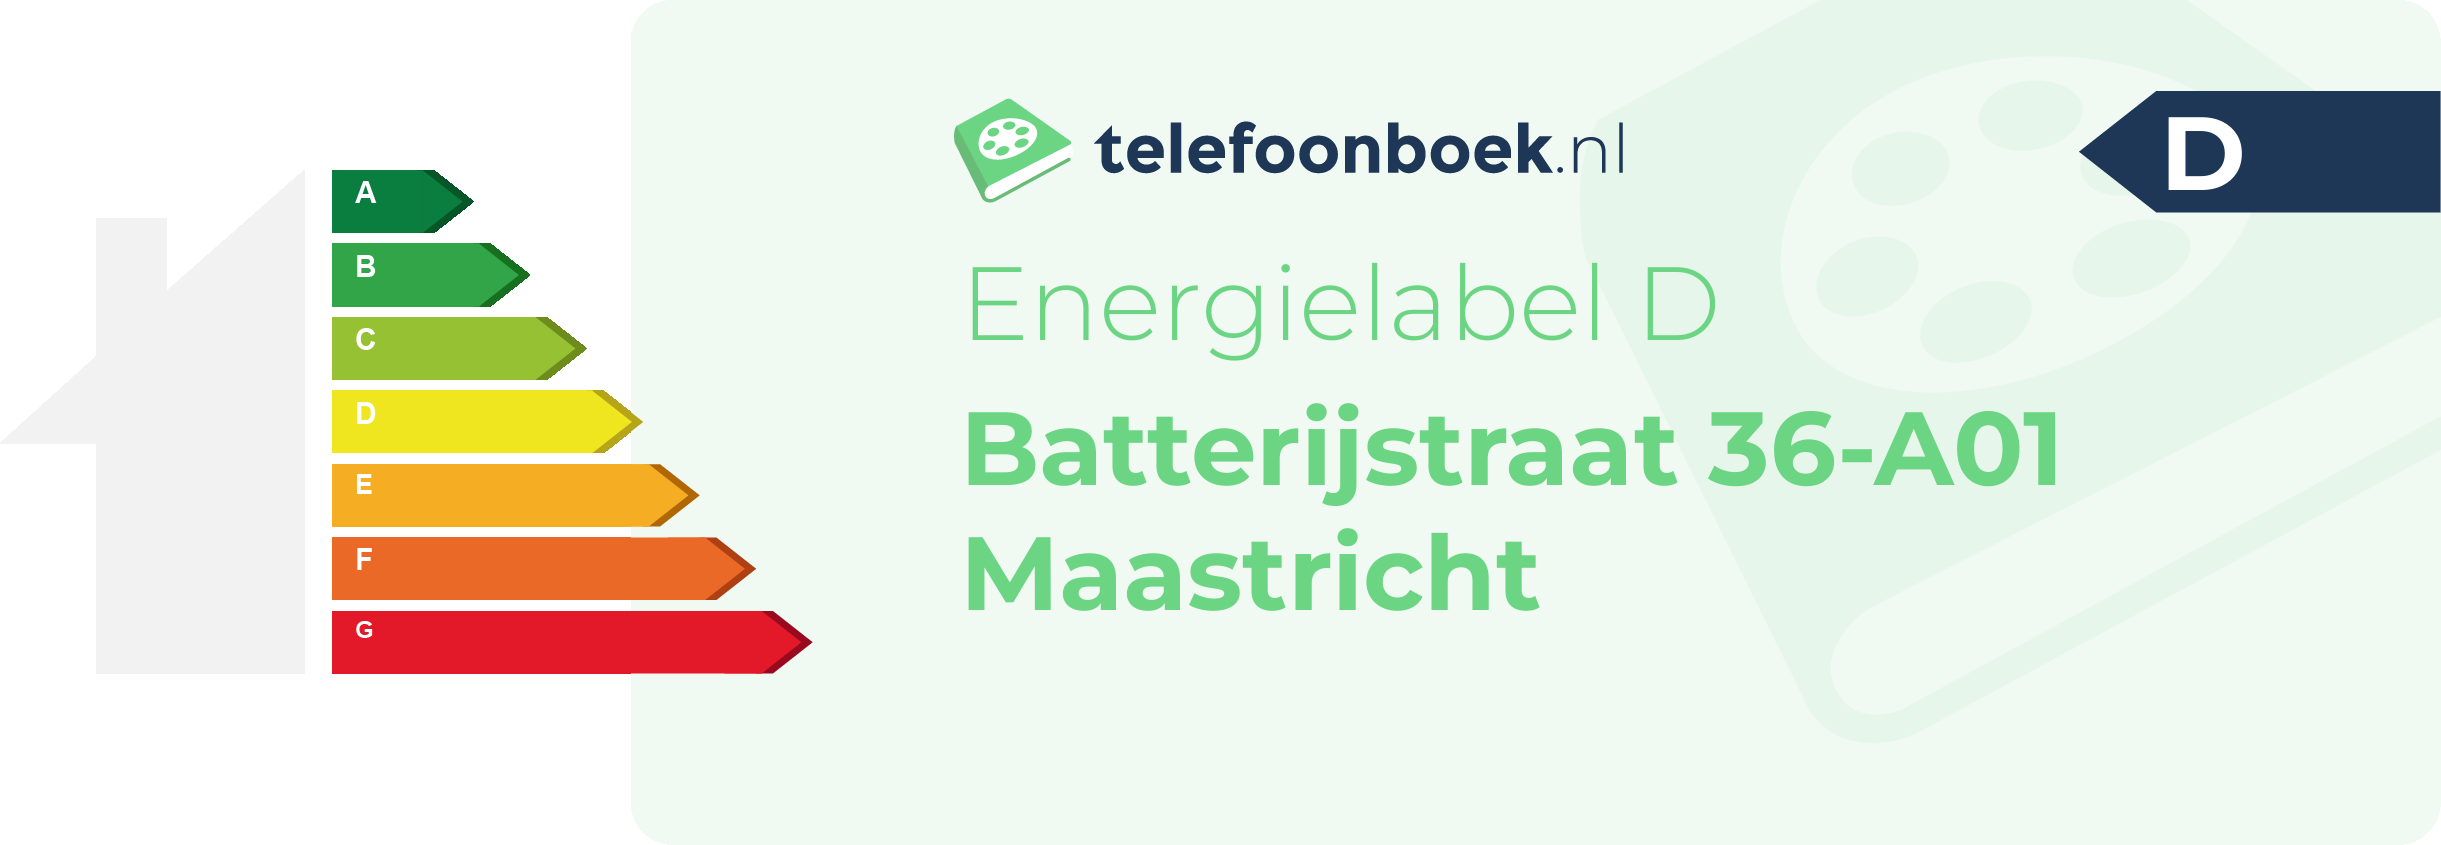 Energielabel Batterijstraat 36-A01 Maastricht